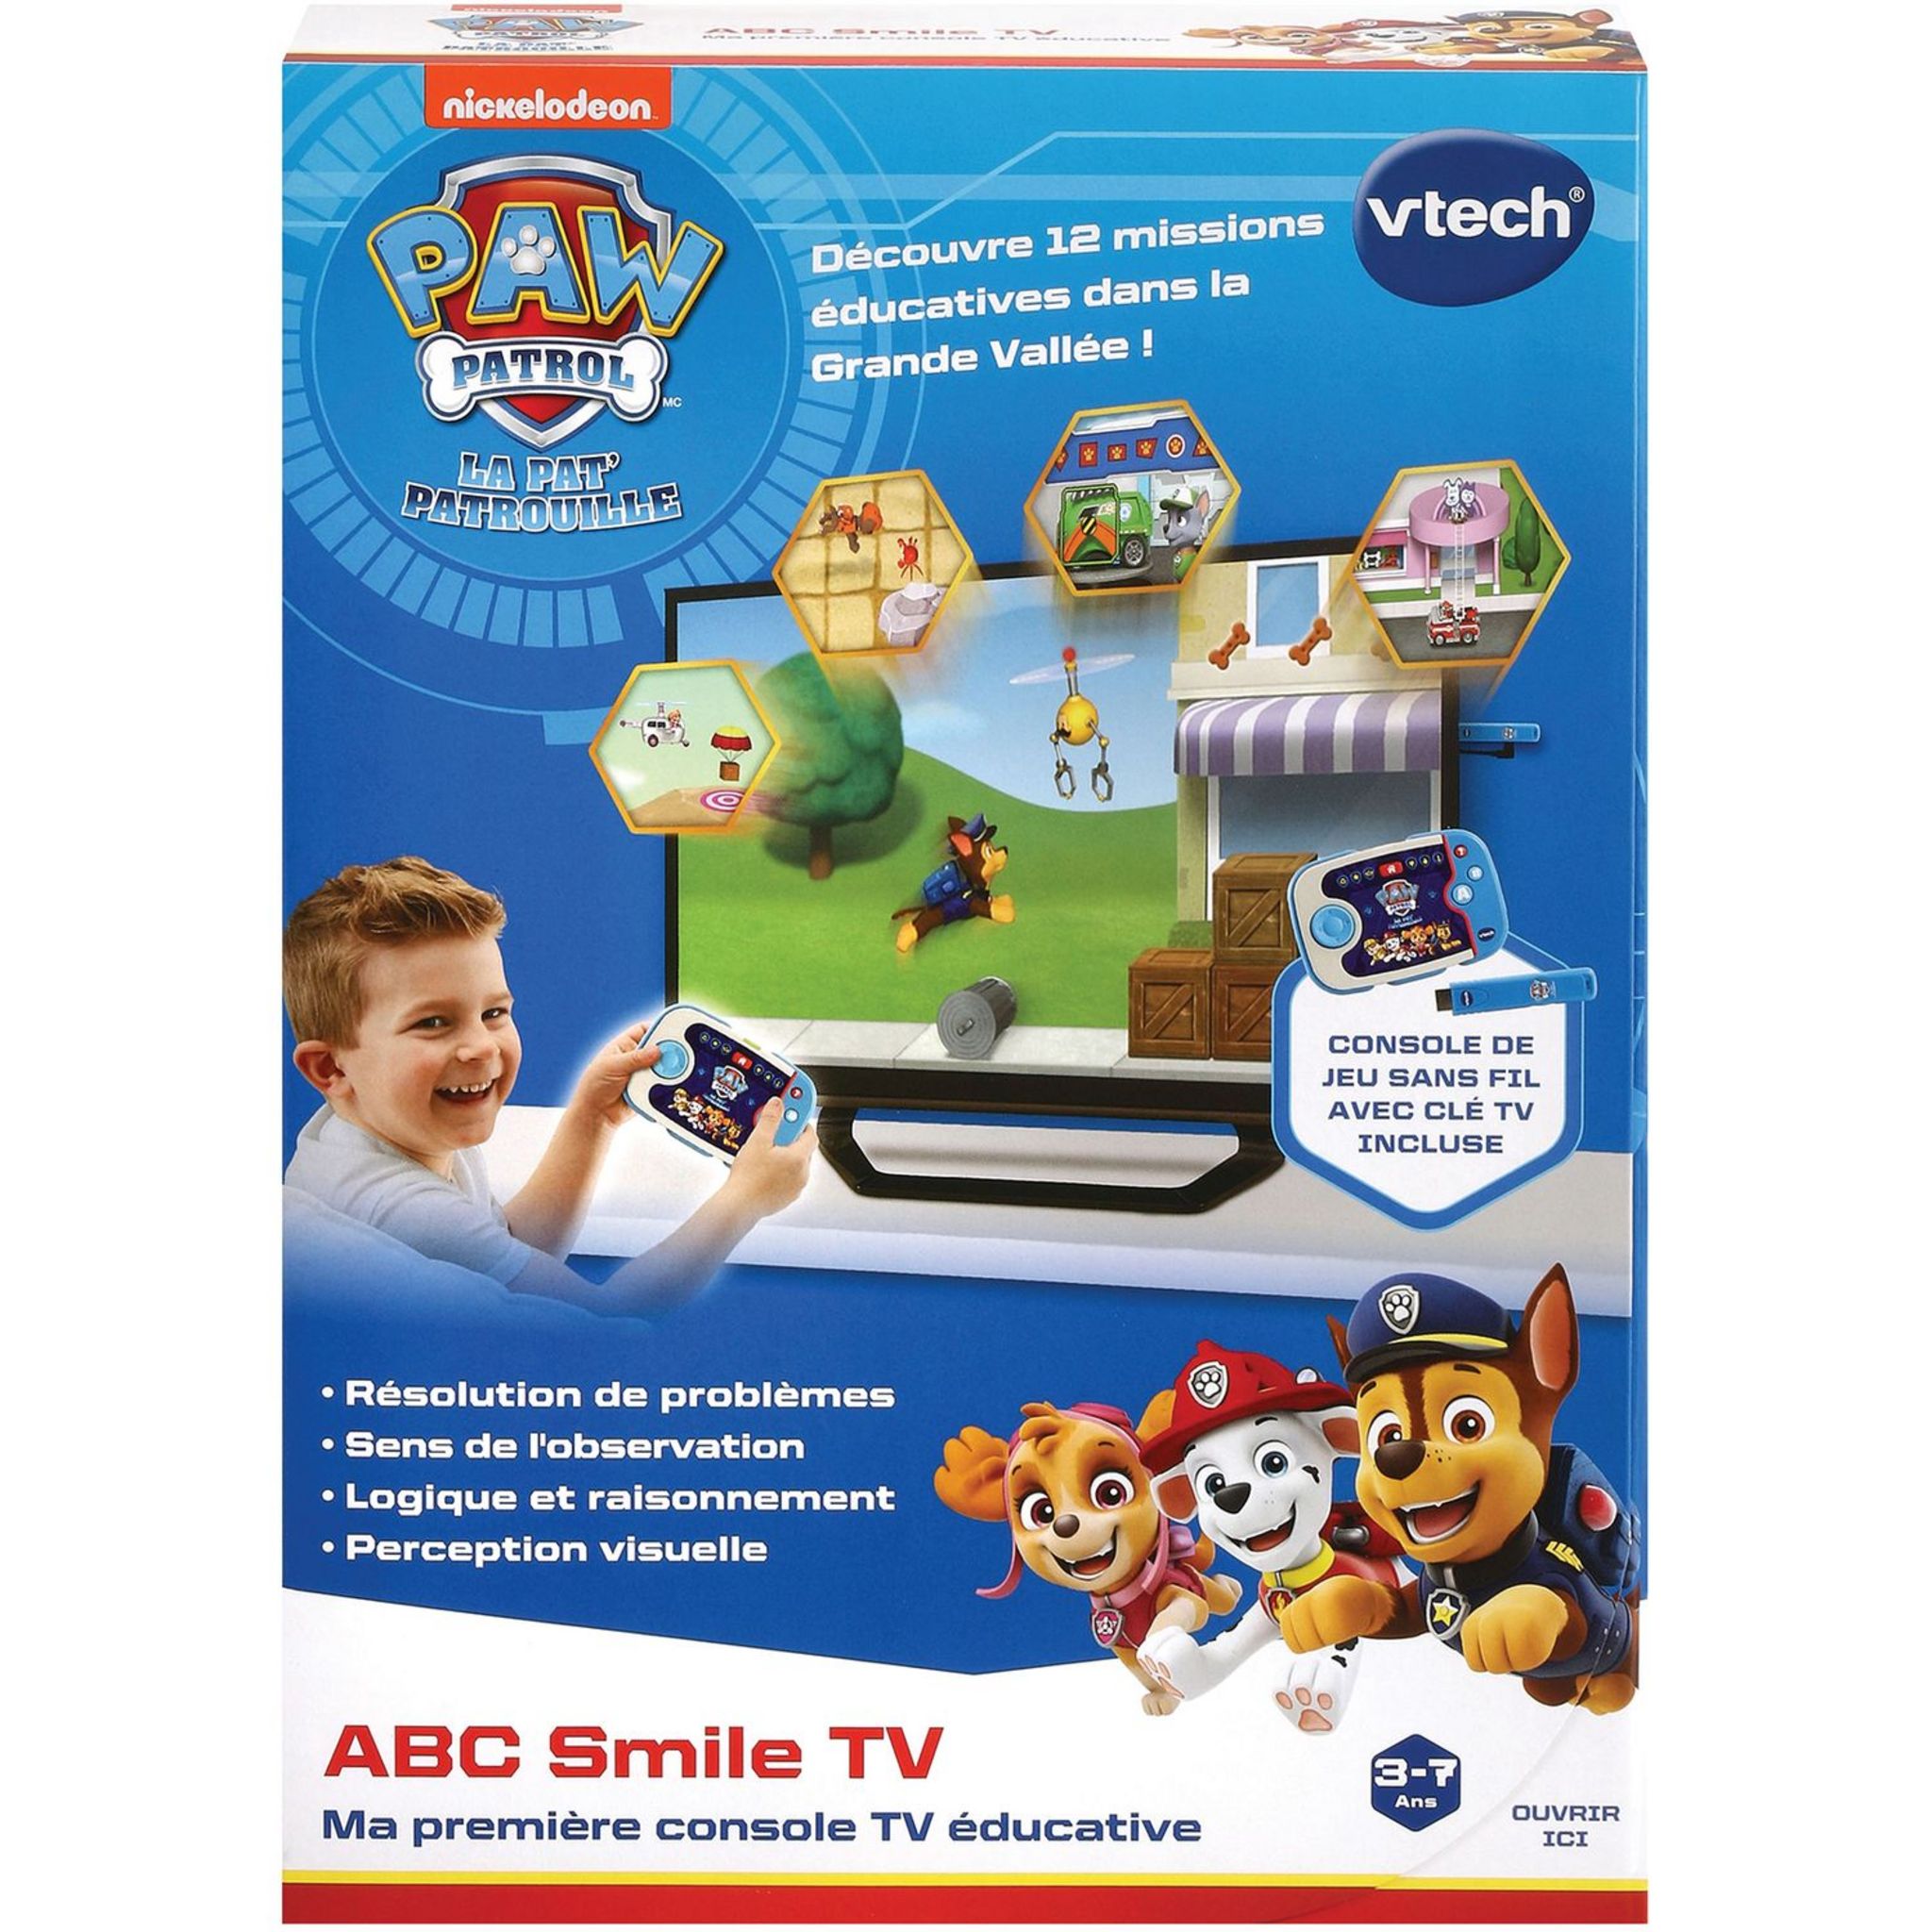 15€ sur Ma première Console TV éducative Vtech ABC Smile TV